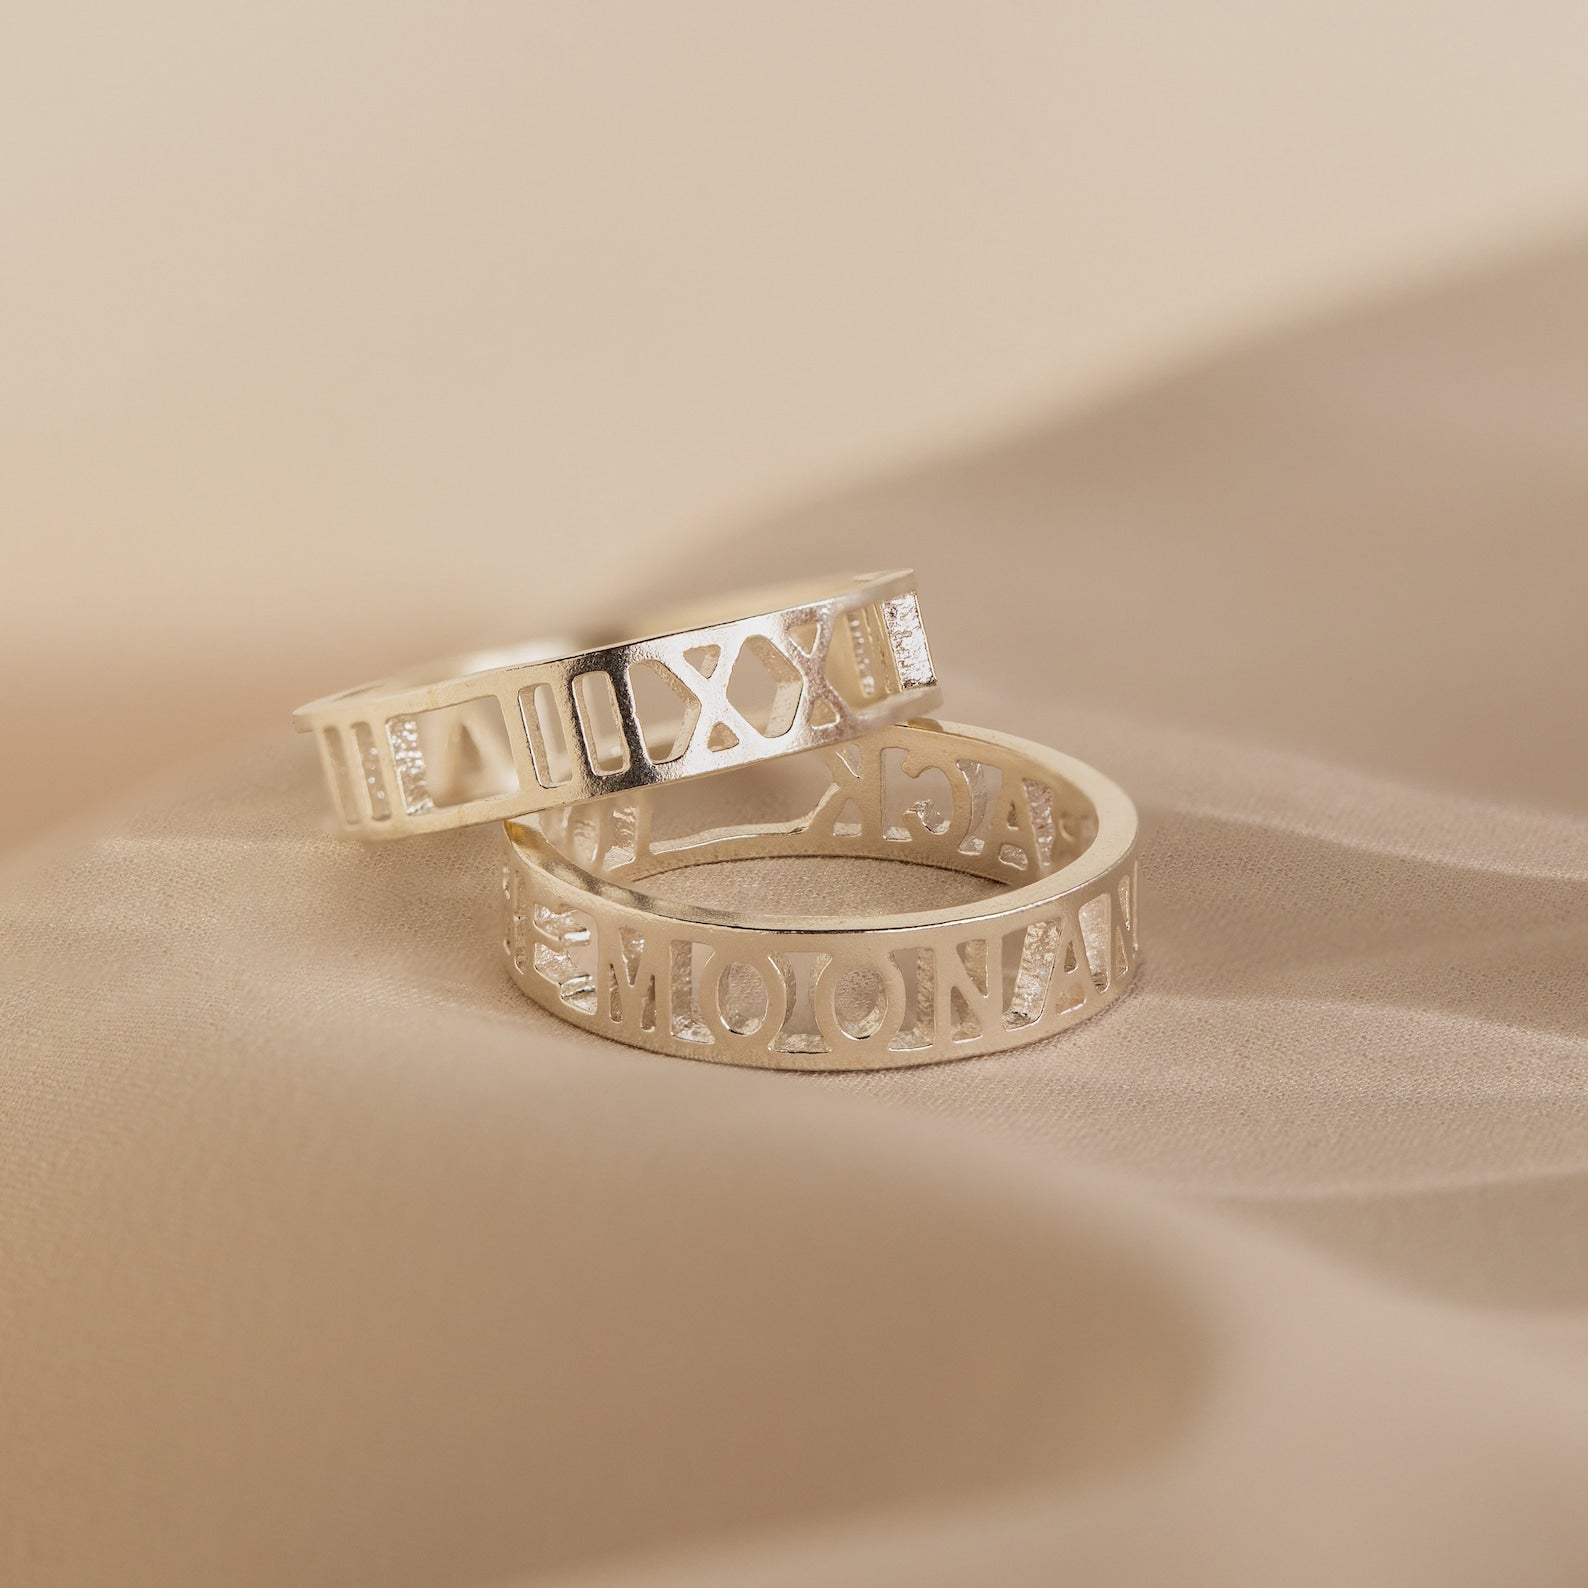 Custom Roman Numerals Ring